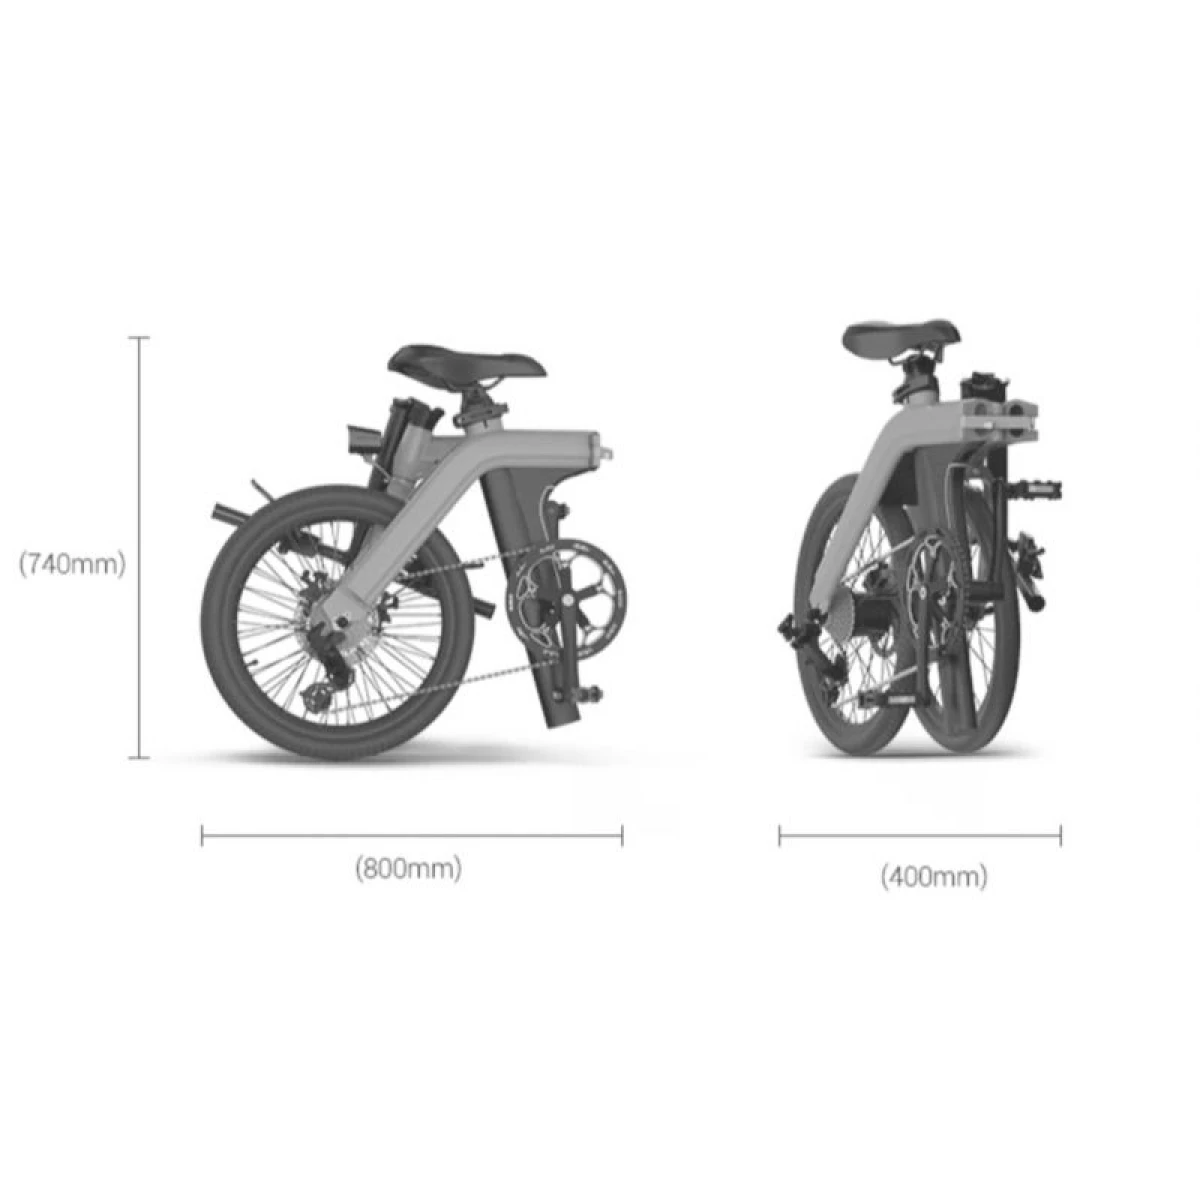 Les dimensions du vélo électrique pliable de TWHEELS une fois plié : 80 cm x 74 cm.